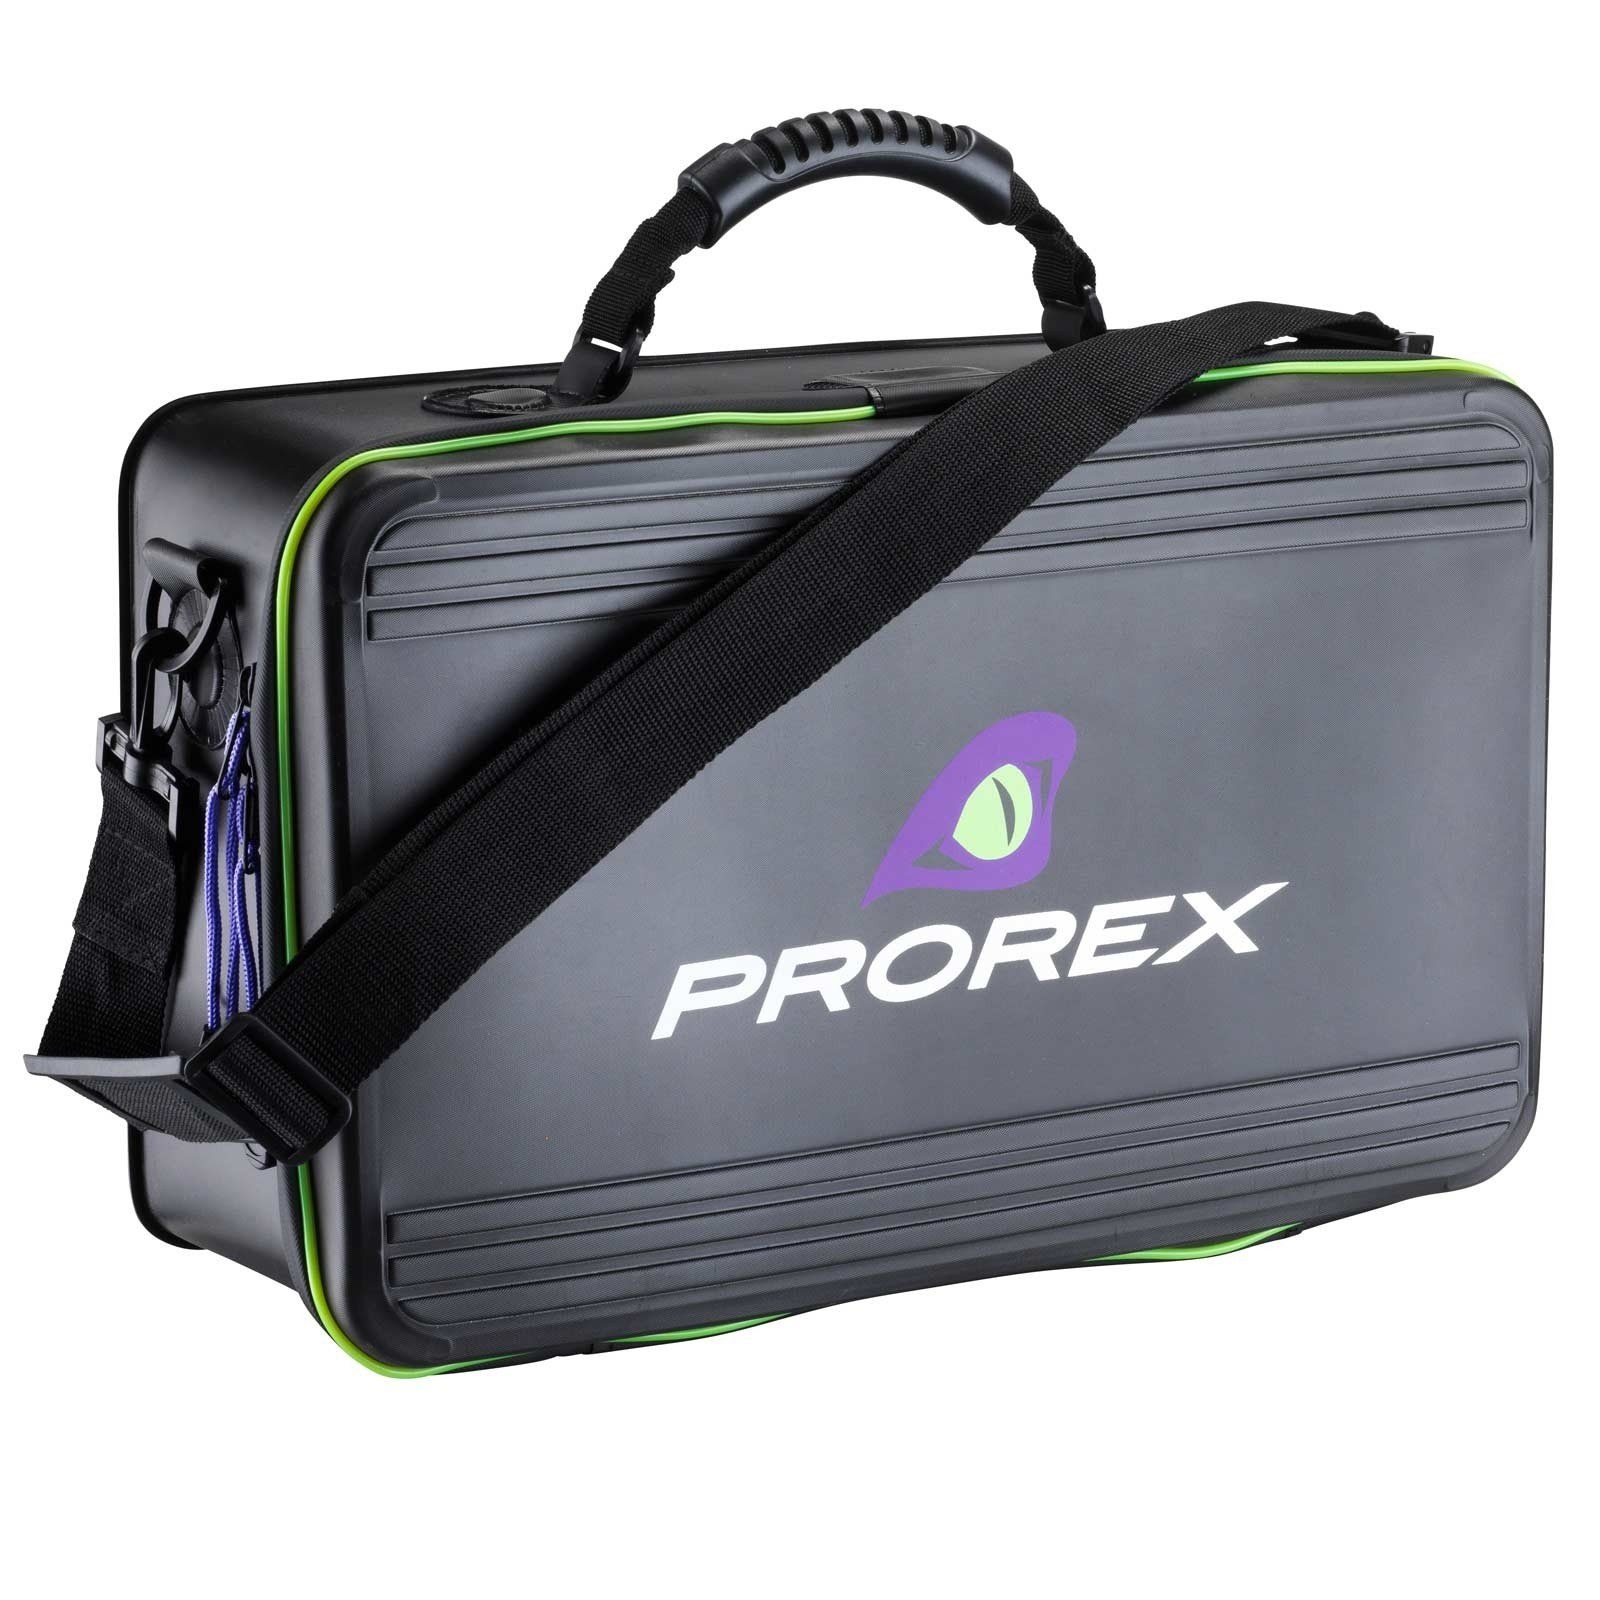 Daiwa Angelkoffer, Daiwa Prorex XL Lure Storage Bag Angeltasche